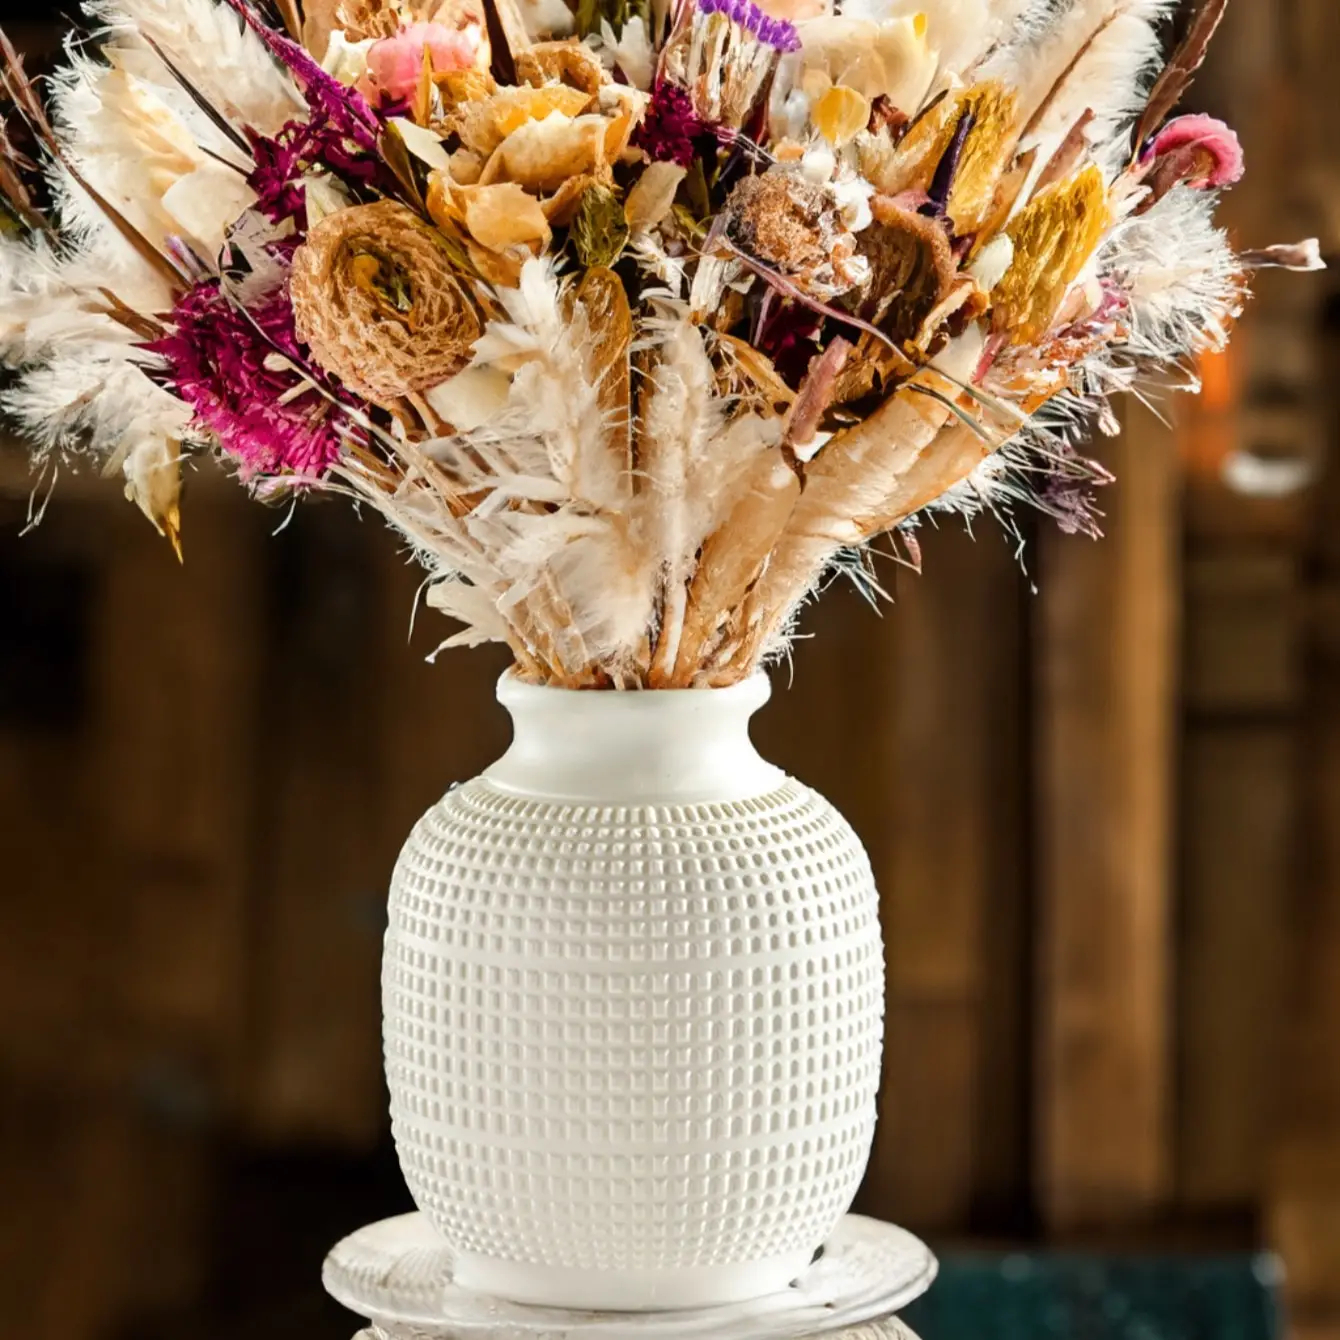 1pc Durable Plastic Vase, Faux Ceramic Flower Vase For Home Decoration  Floral Arrangements